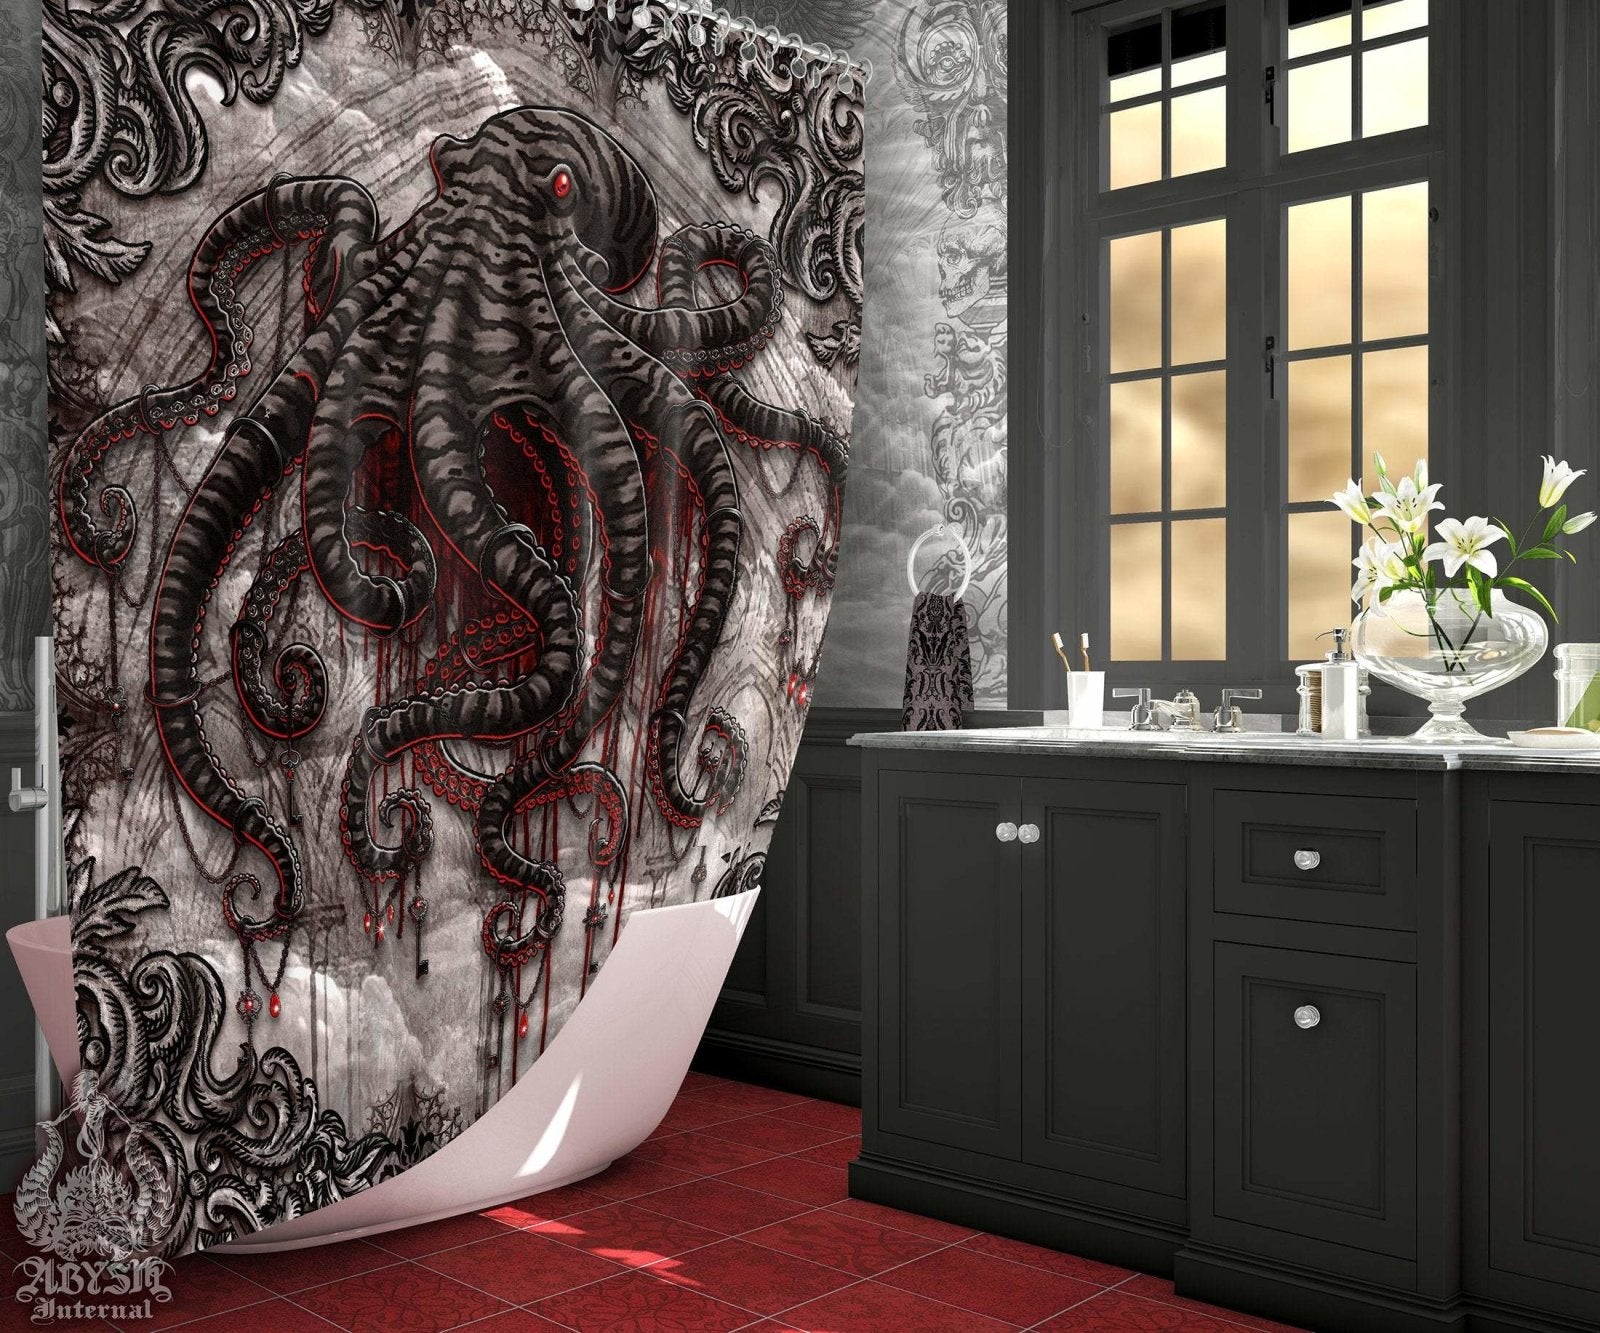 Gothic Shower Curtain, Octopus, Gothic Bathroom Decor, Goth Horror - Horror, Grey - Abysm Internal